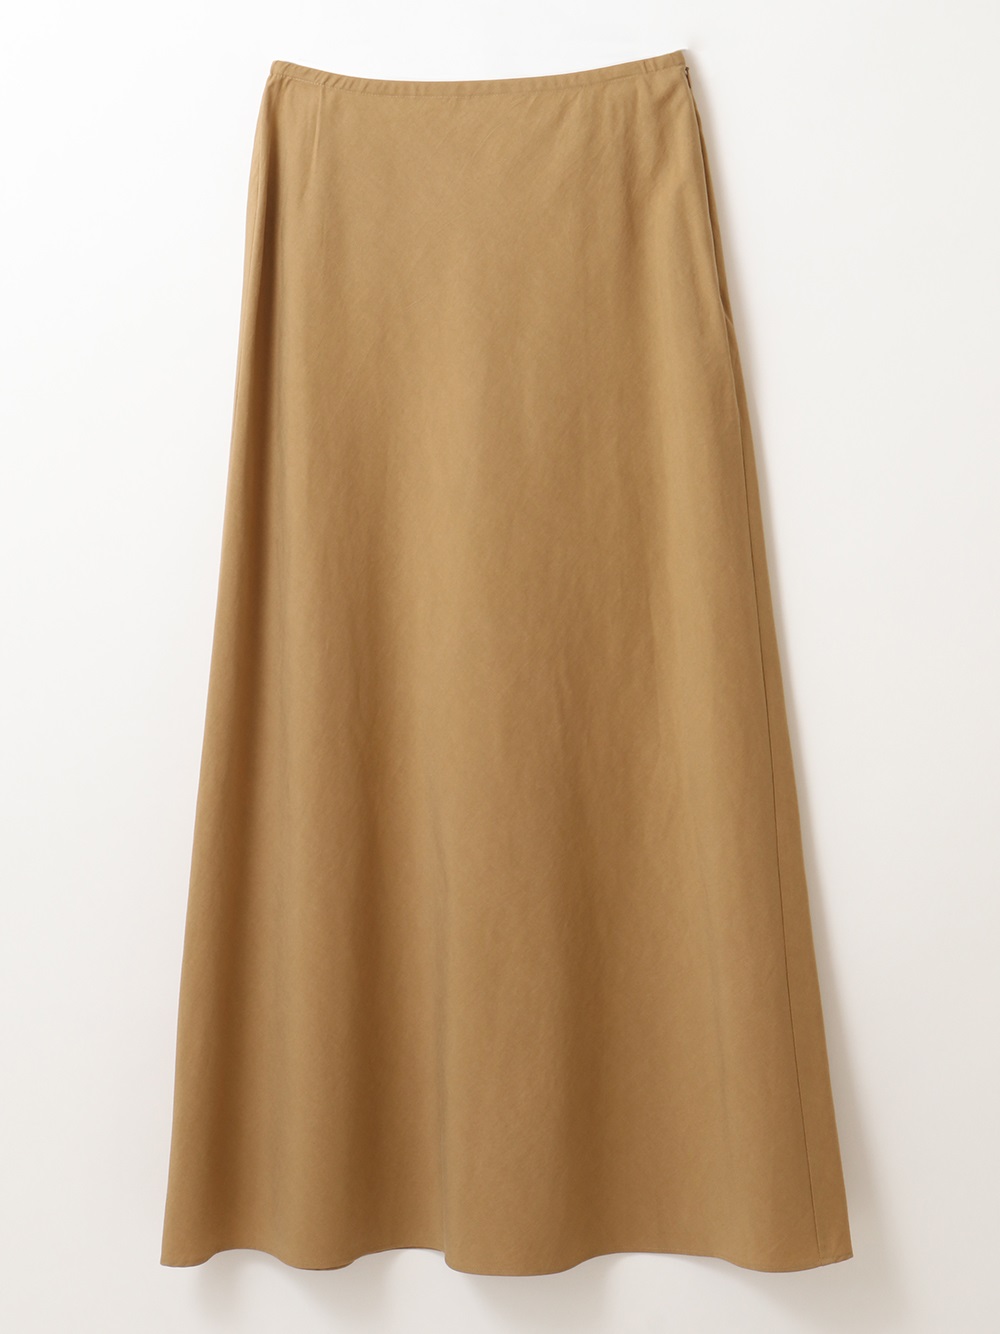 A-Line Long Skirt(83キャメル-フリー)